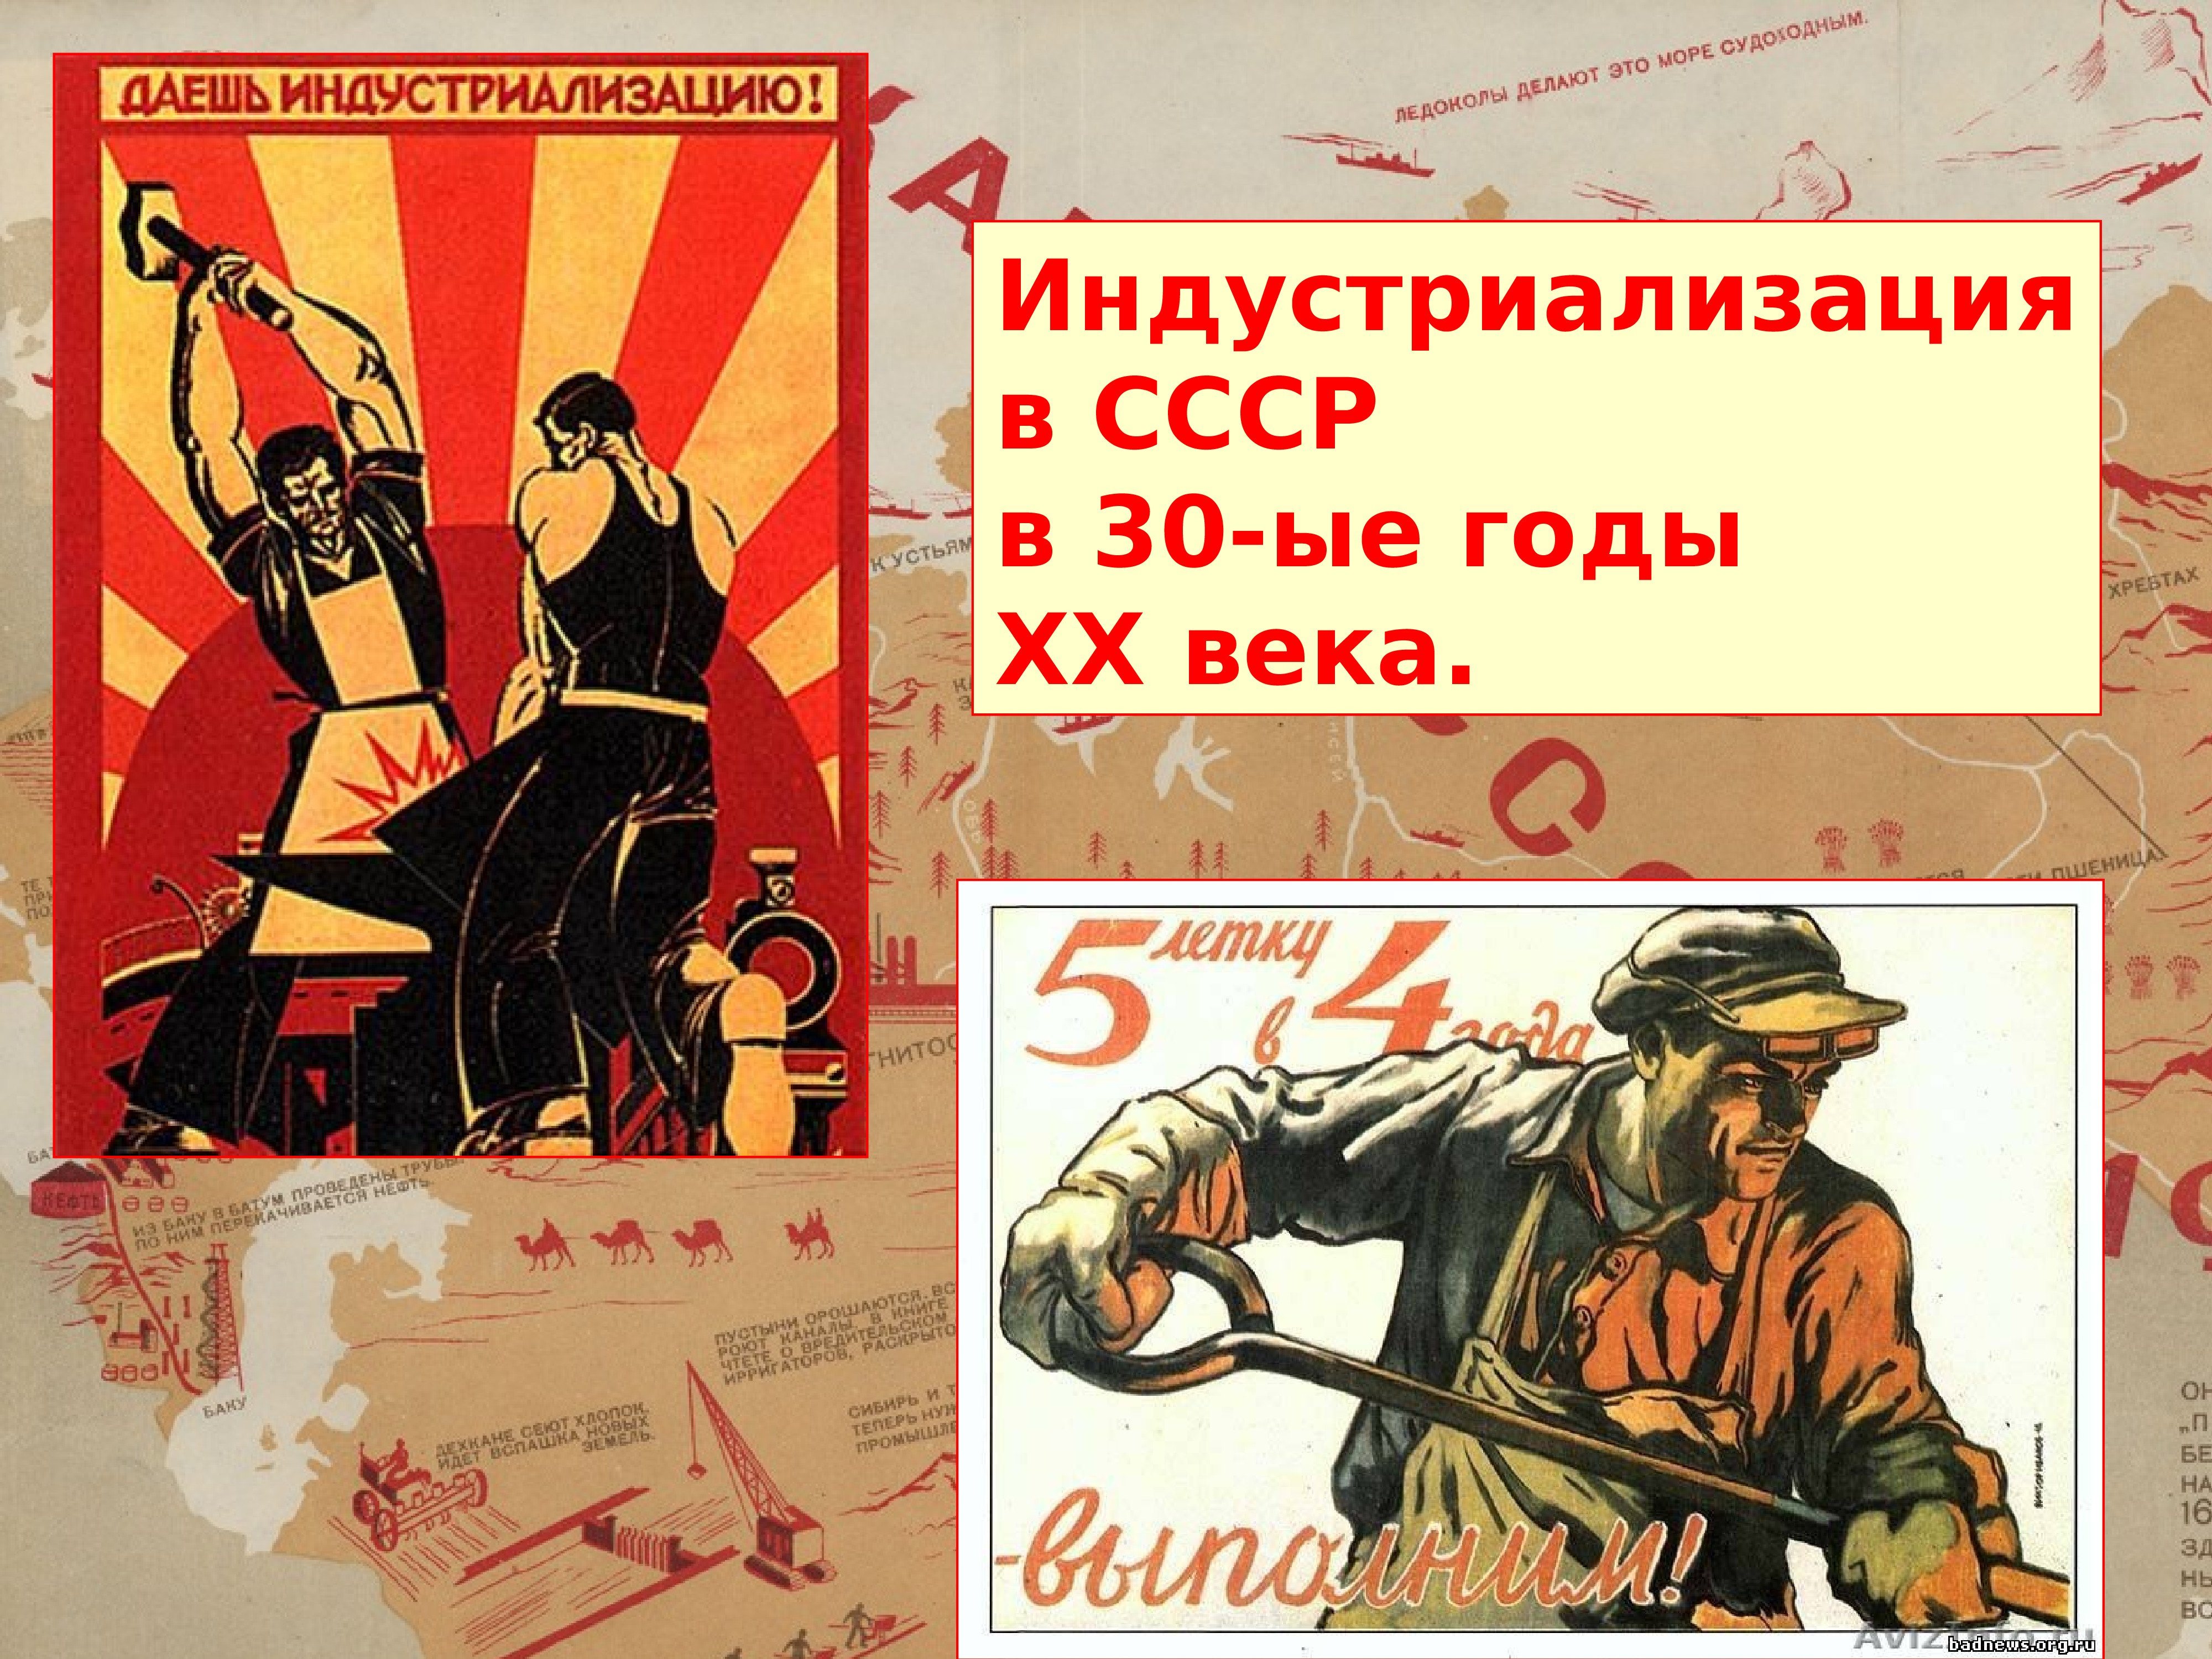 В каком году был создан плакат. Индустриализация. Индустриализация в СССР плакаты. Индустриализация 1920-1930 плакат. Индустриализация в СССР 20-30 годы.